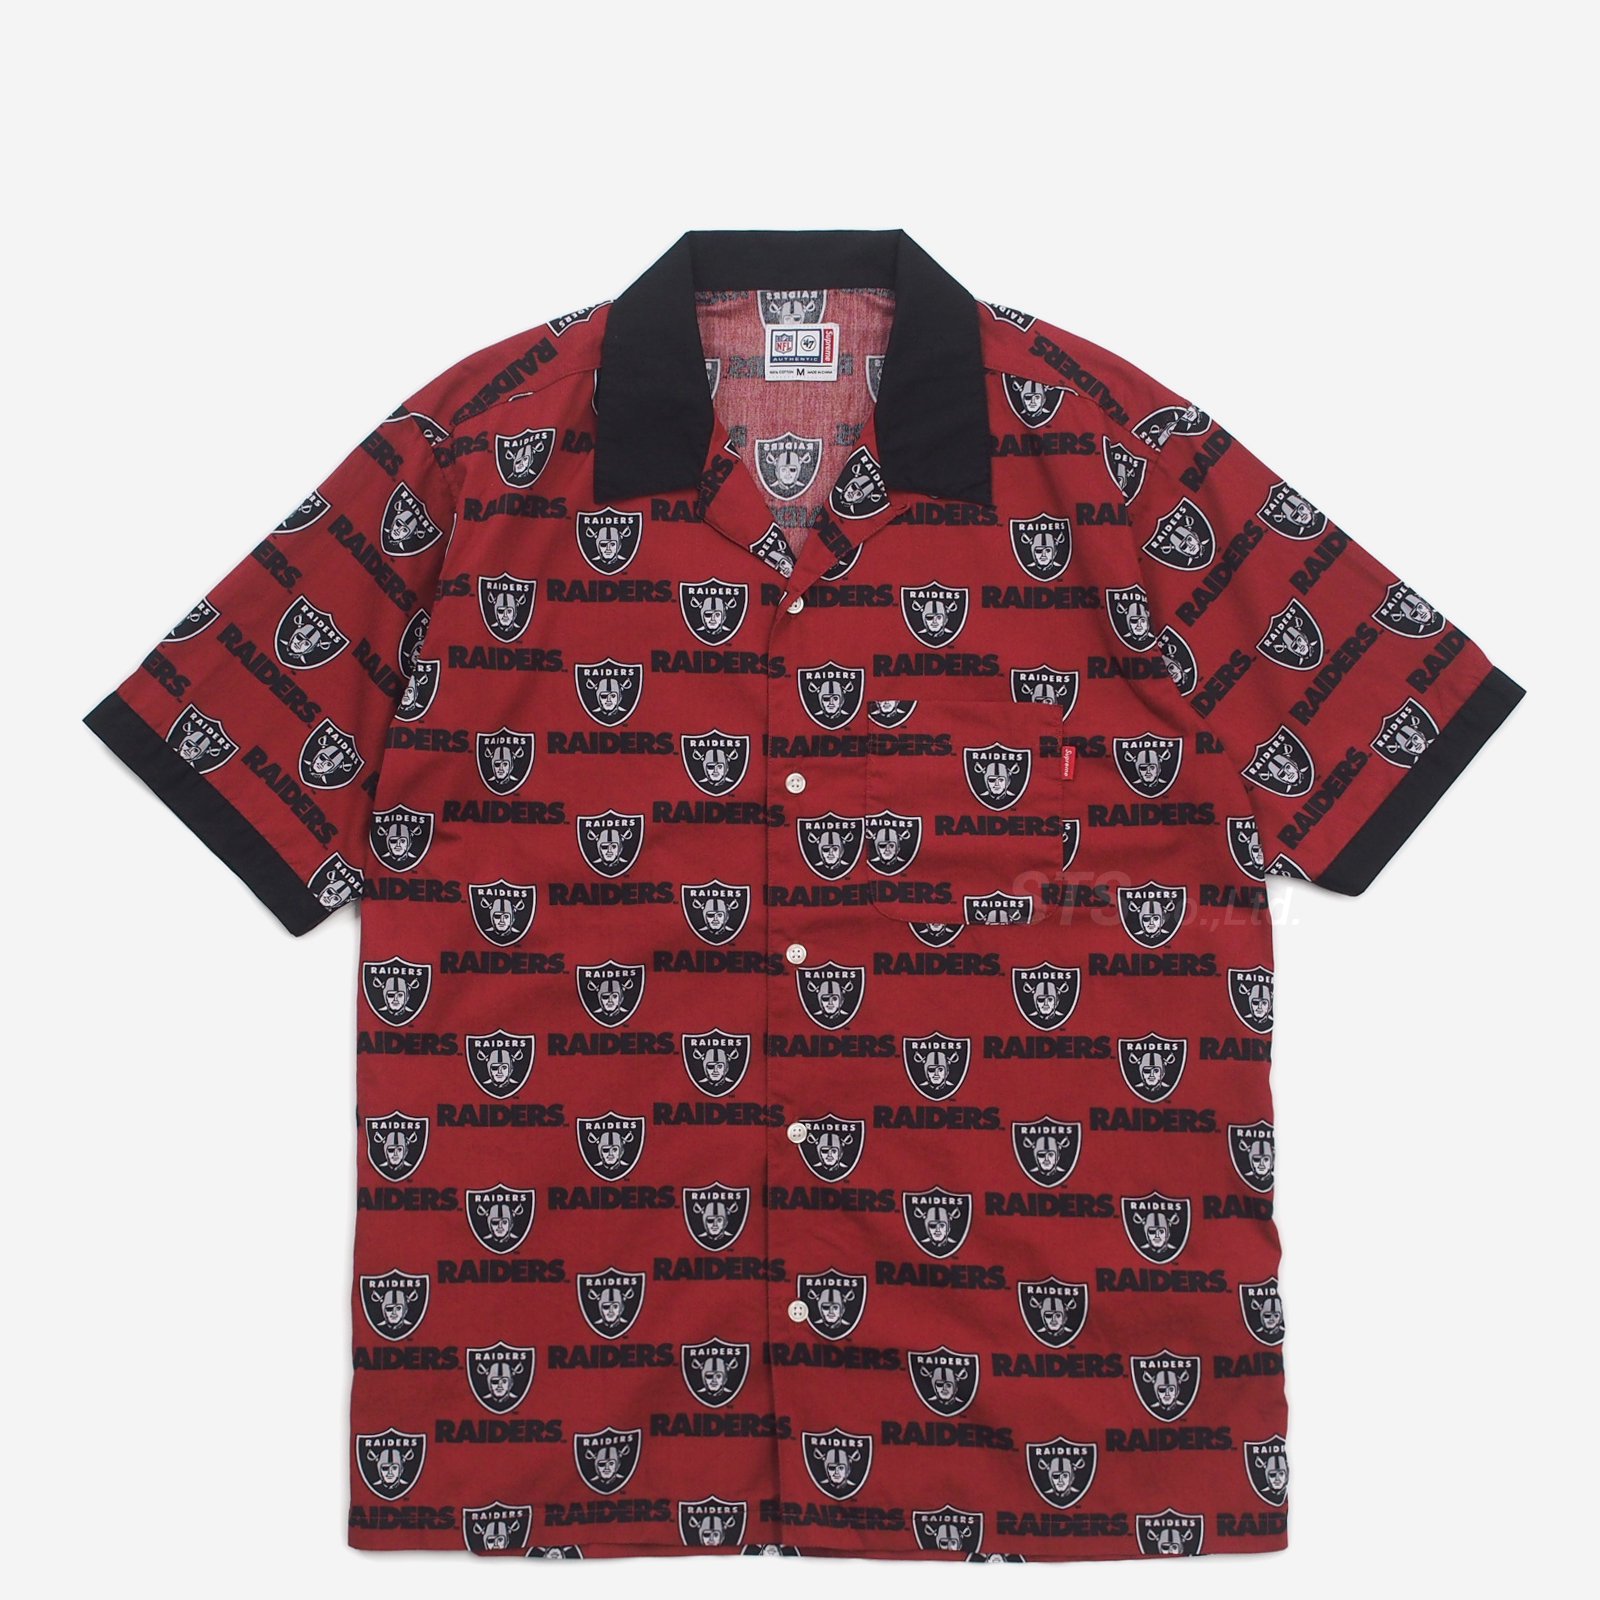 Supreme/NFL/Raiders/'47 S/S Shirt - UG.SHAFT